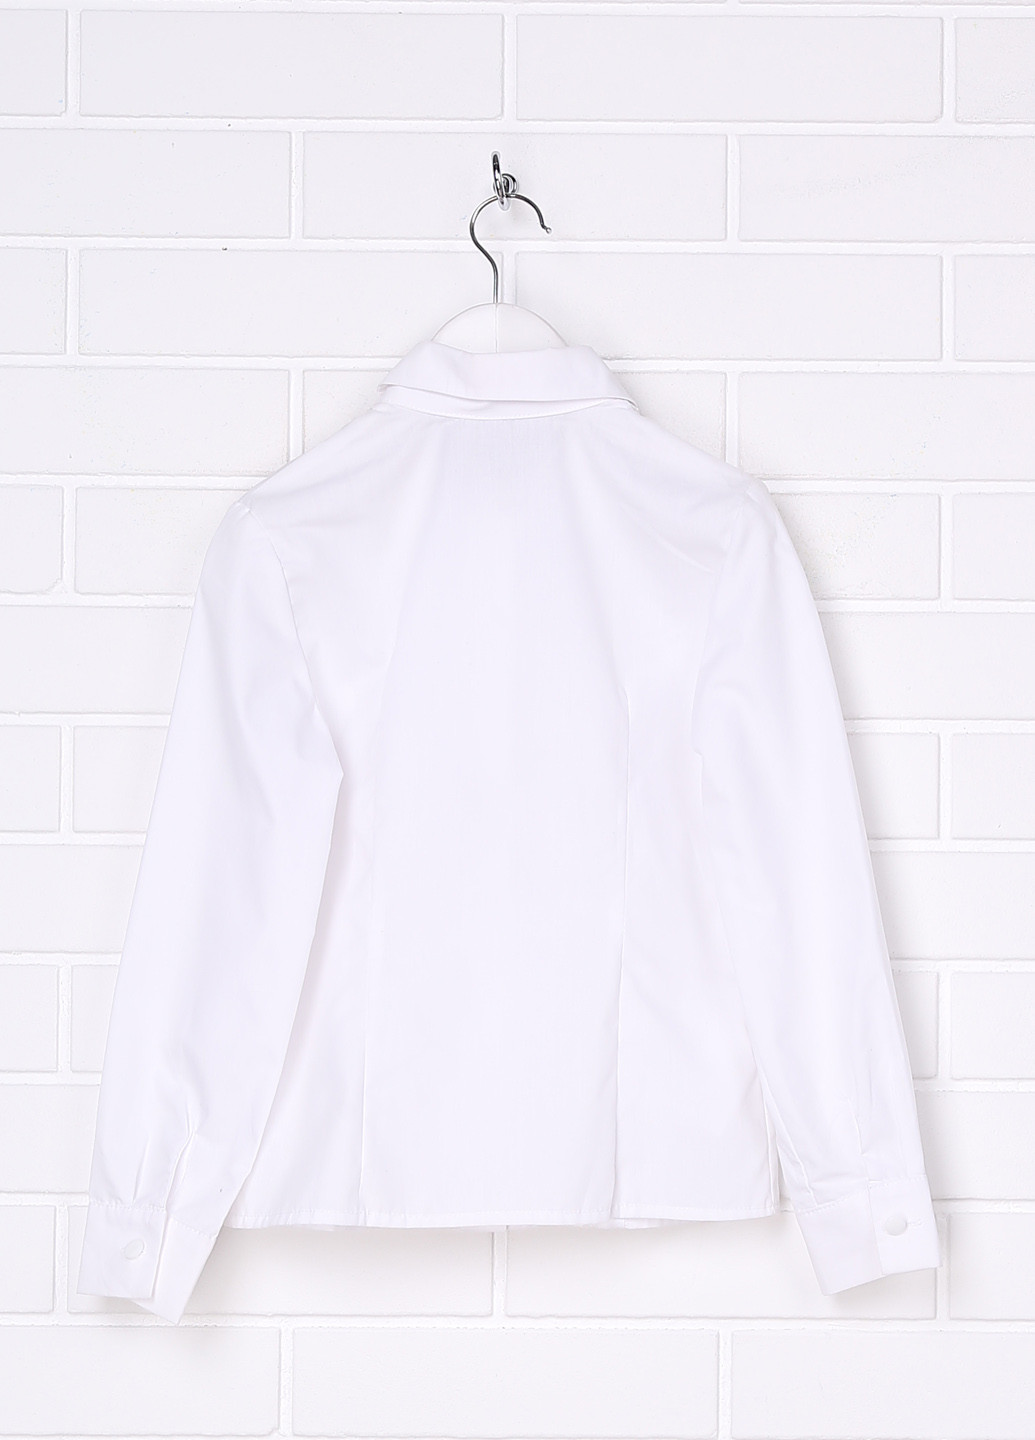 Блуза Sasha з довгим рукавом однотонна біла ділова